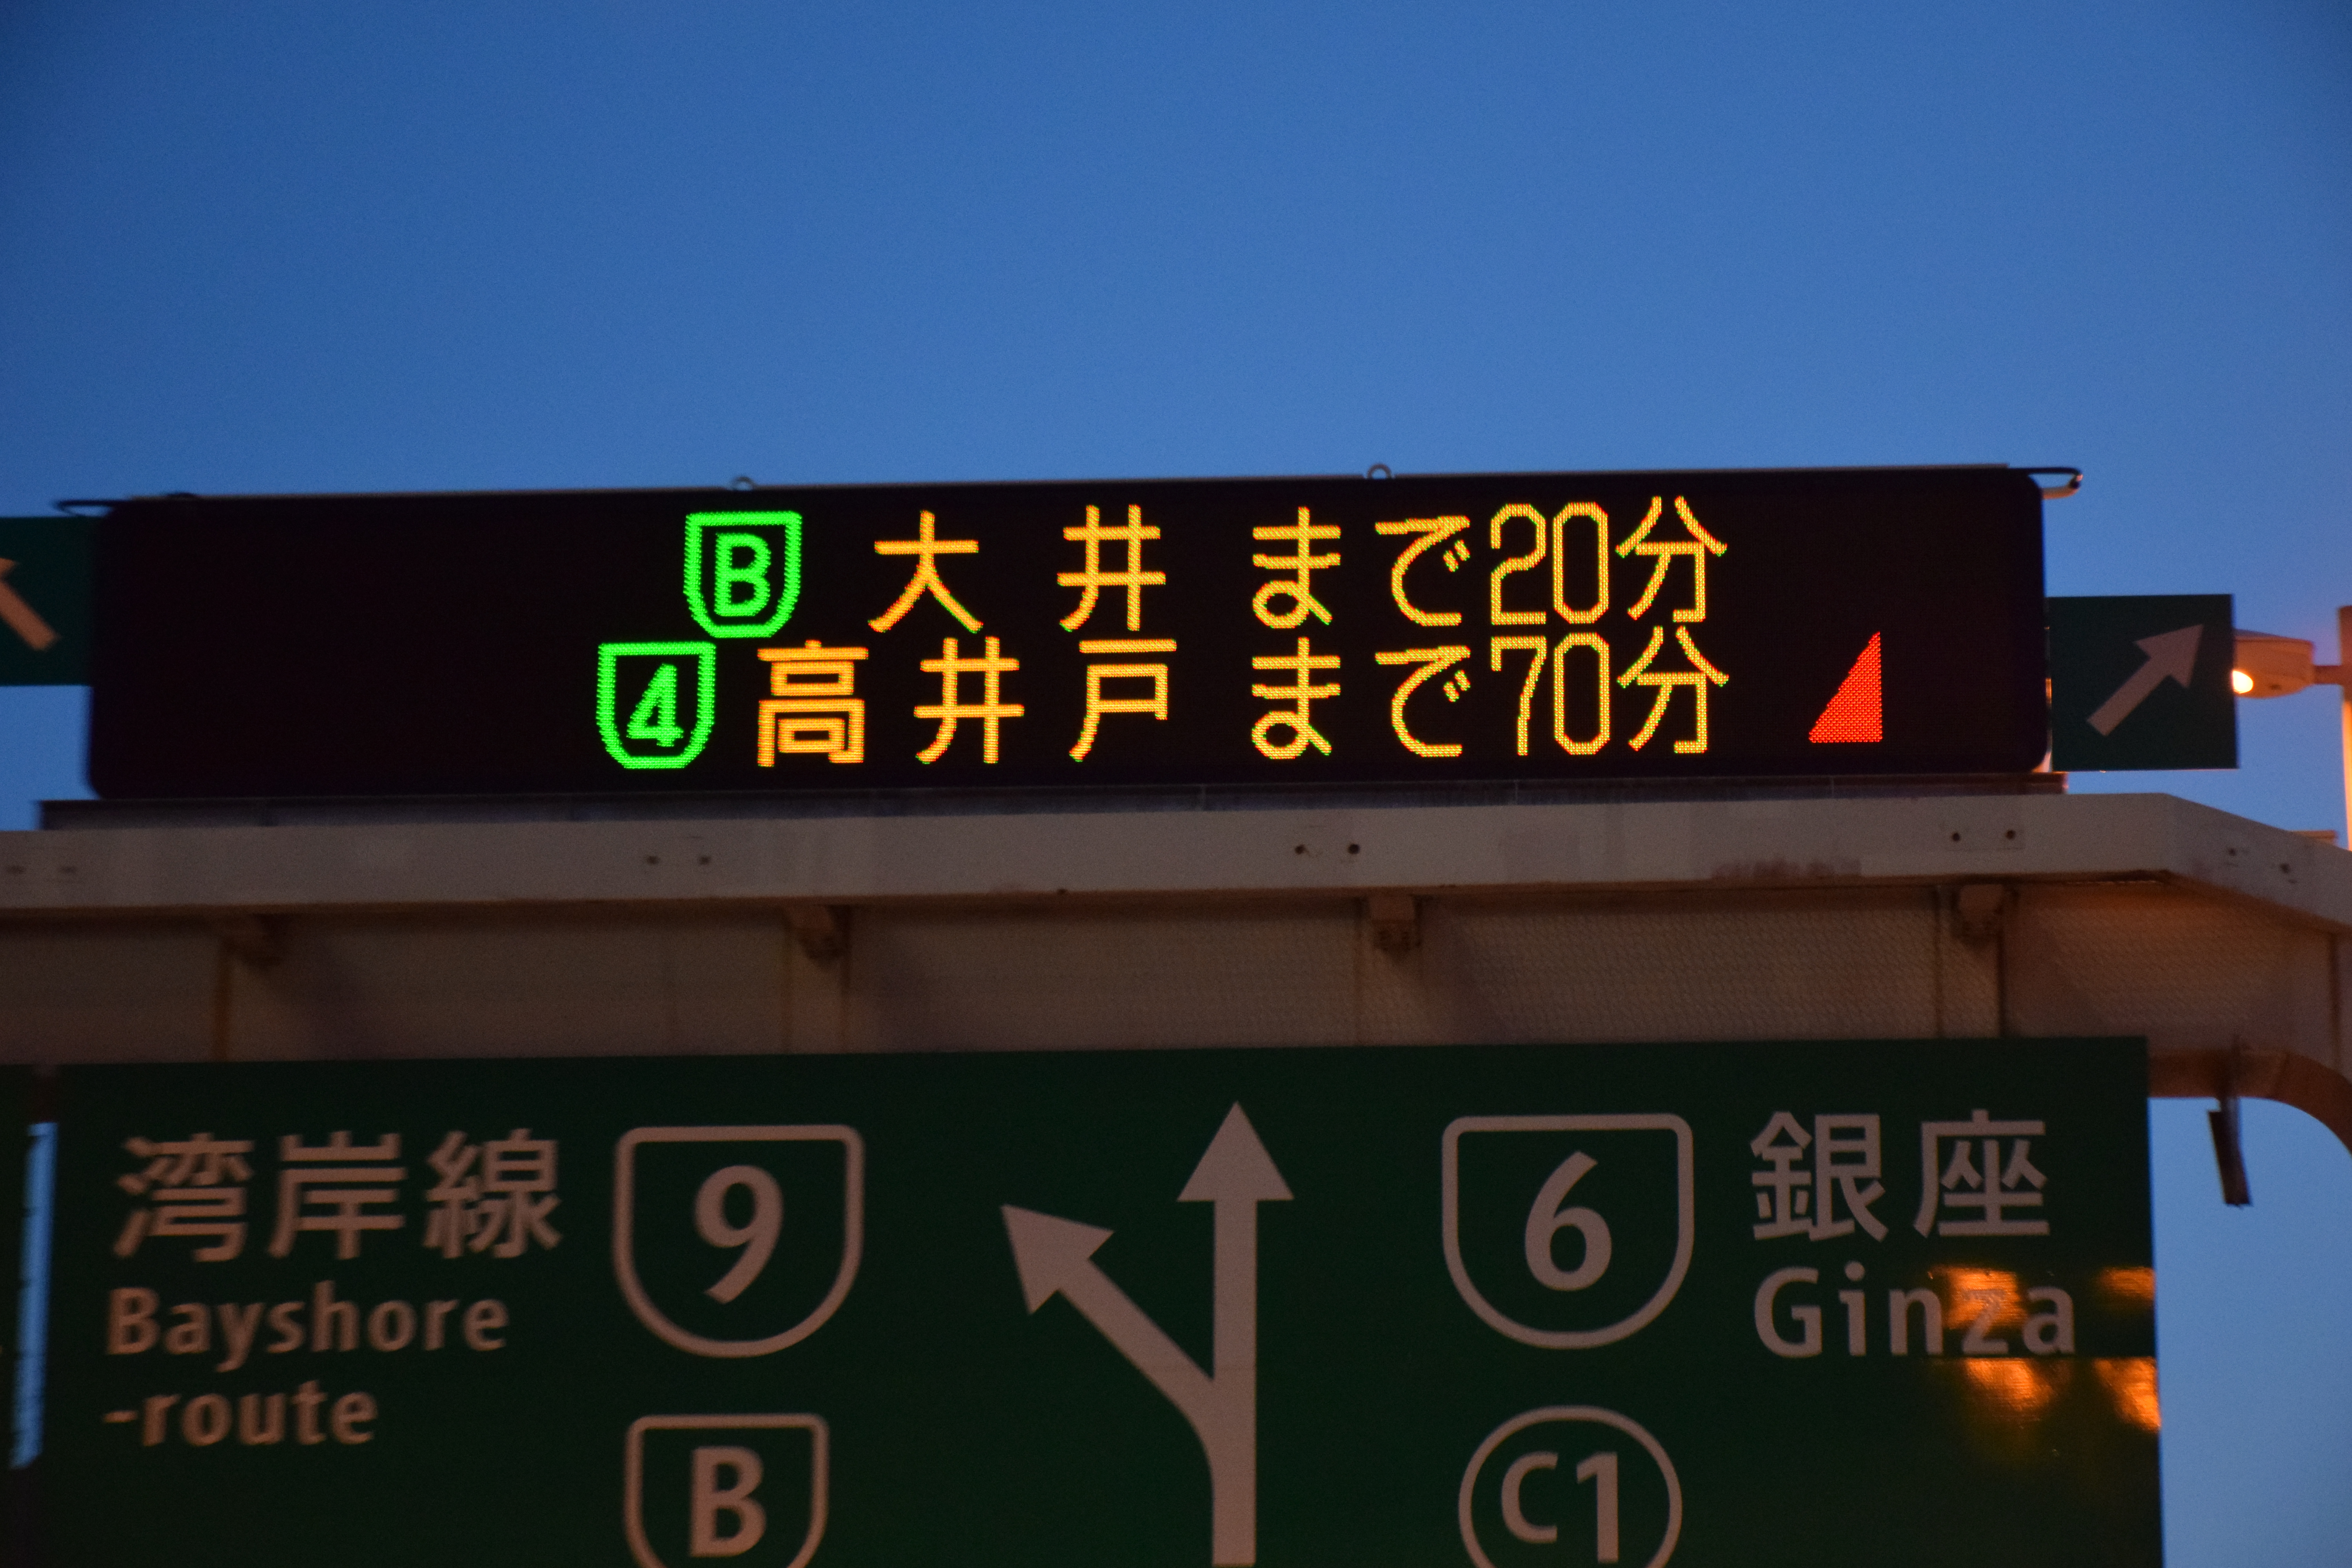 高速道路の電光掲示板で見かける「赤い三角マーク」は何を表しているのか 〜 画像1